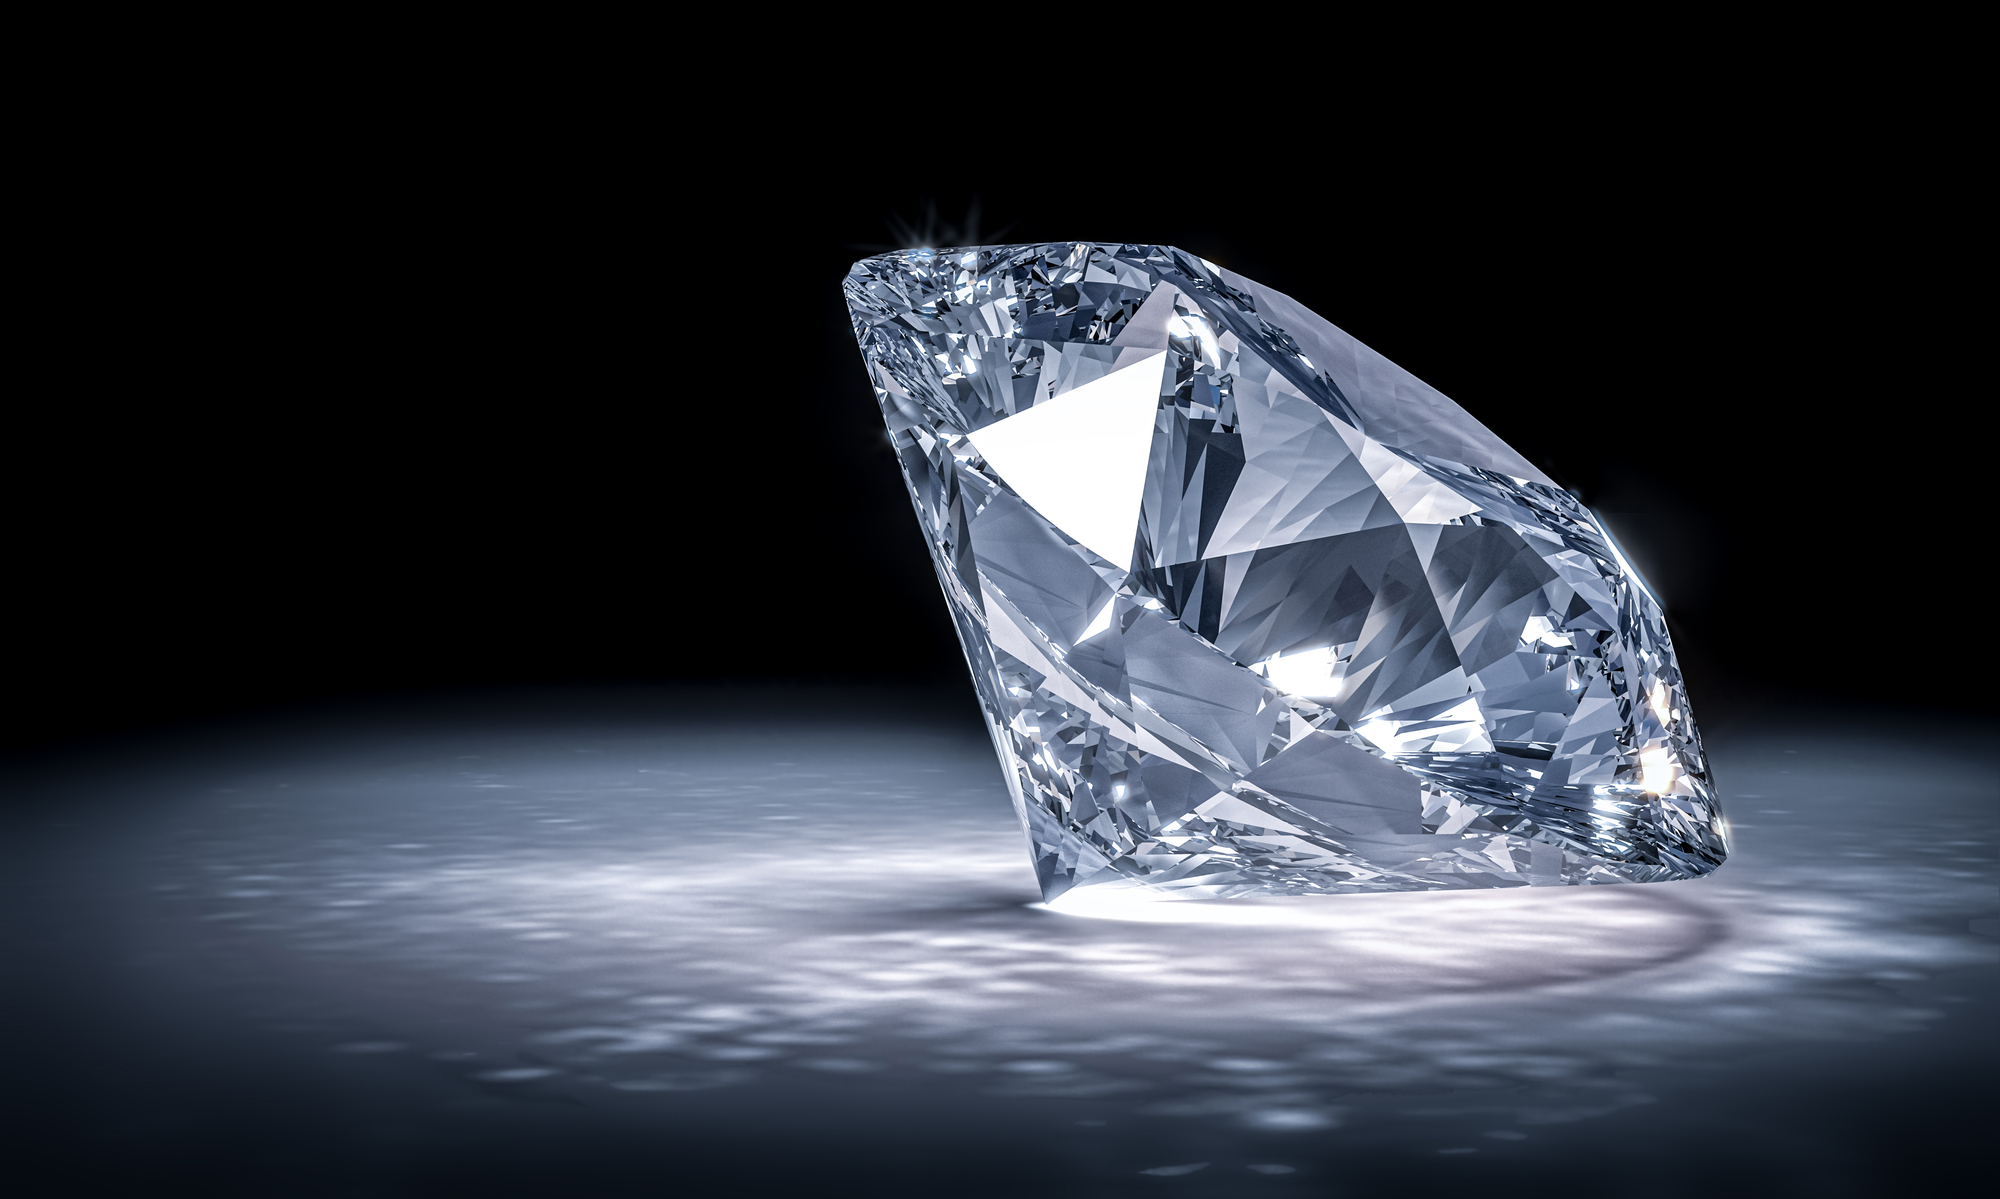 ラボグロウンダイヤモンドとは？その特徴と天然ダイヤモンドとの違い | 資産運用 | 金・資産運用の買取について | 金・プラチナ地金買取 |  ビジュピコ（BIJOUPIKO）